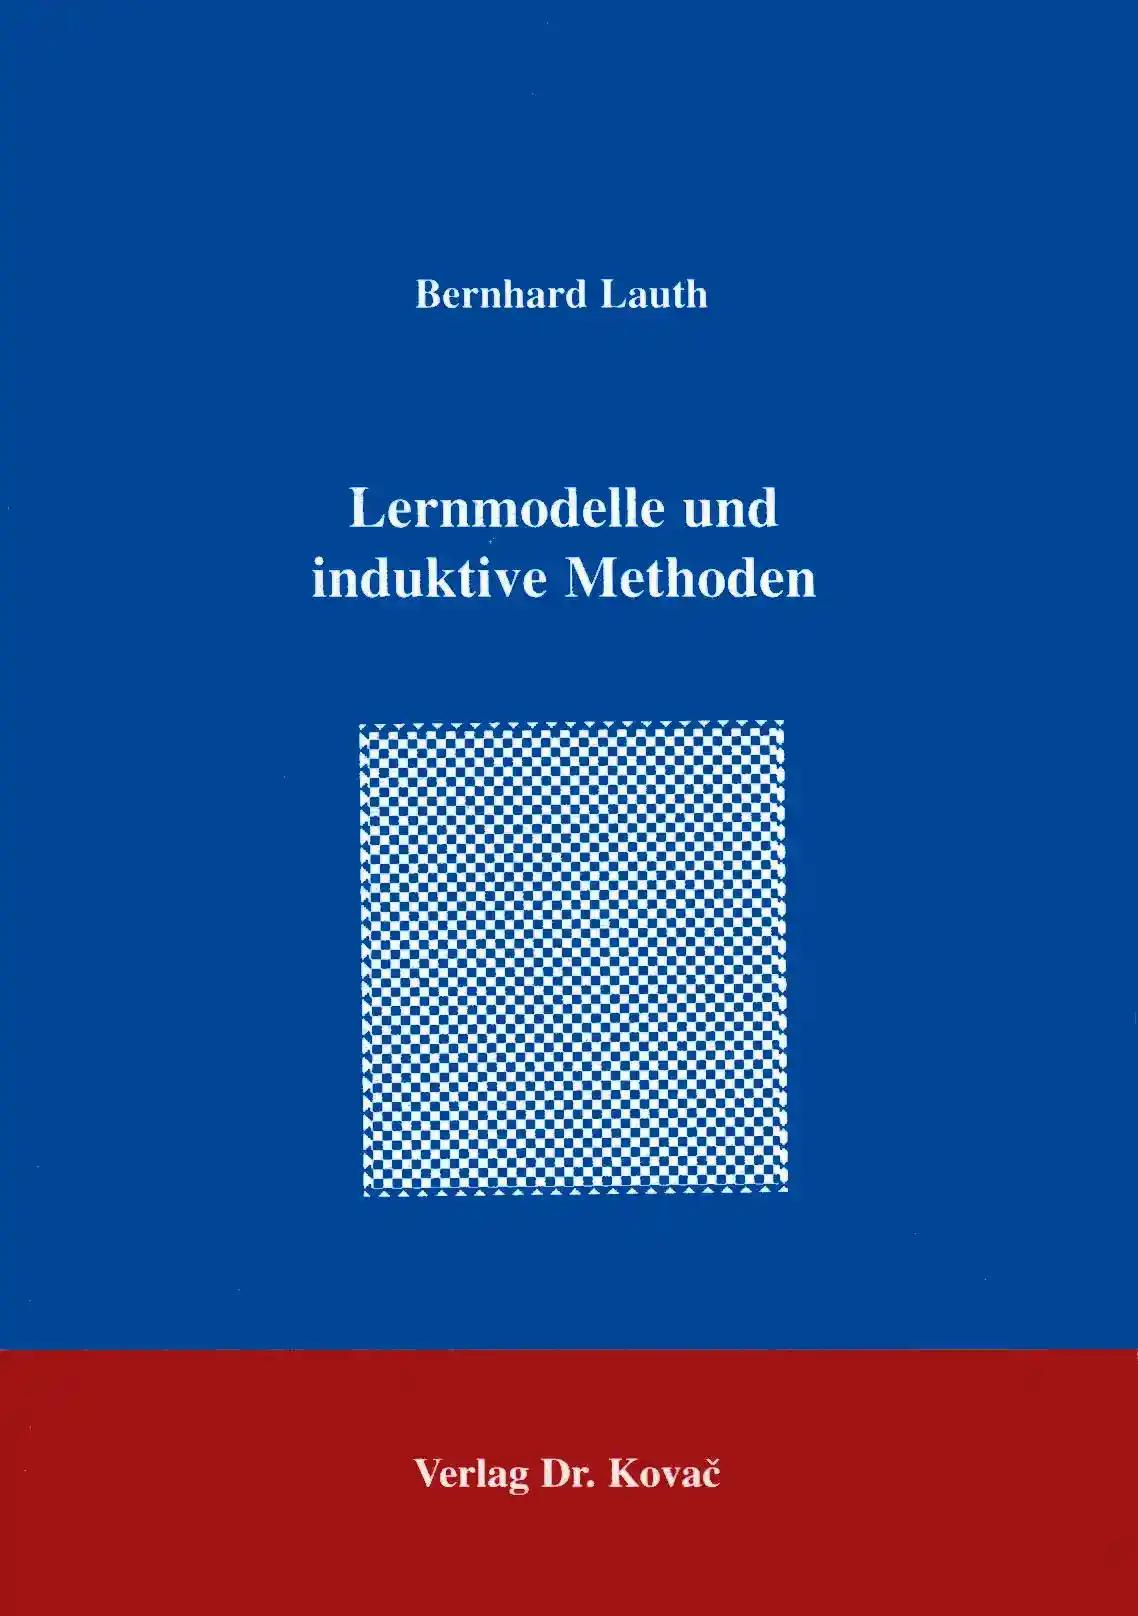 Lernmodelle und induktive Methoden, - Bernhard Lauth